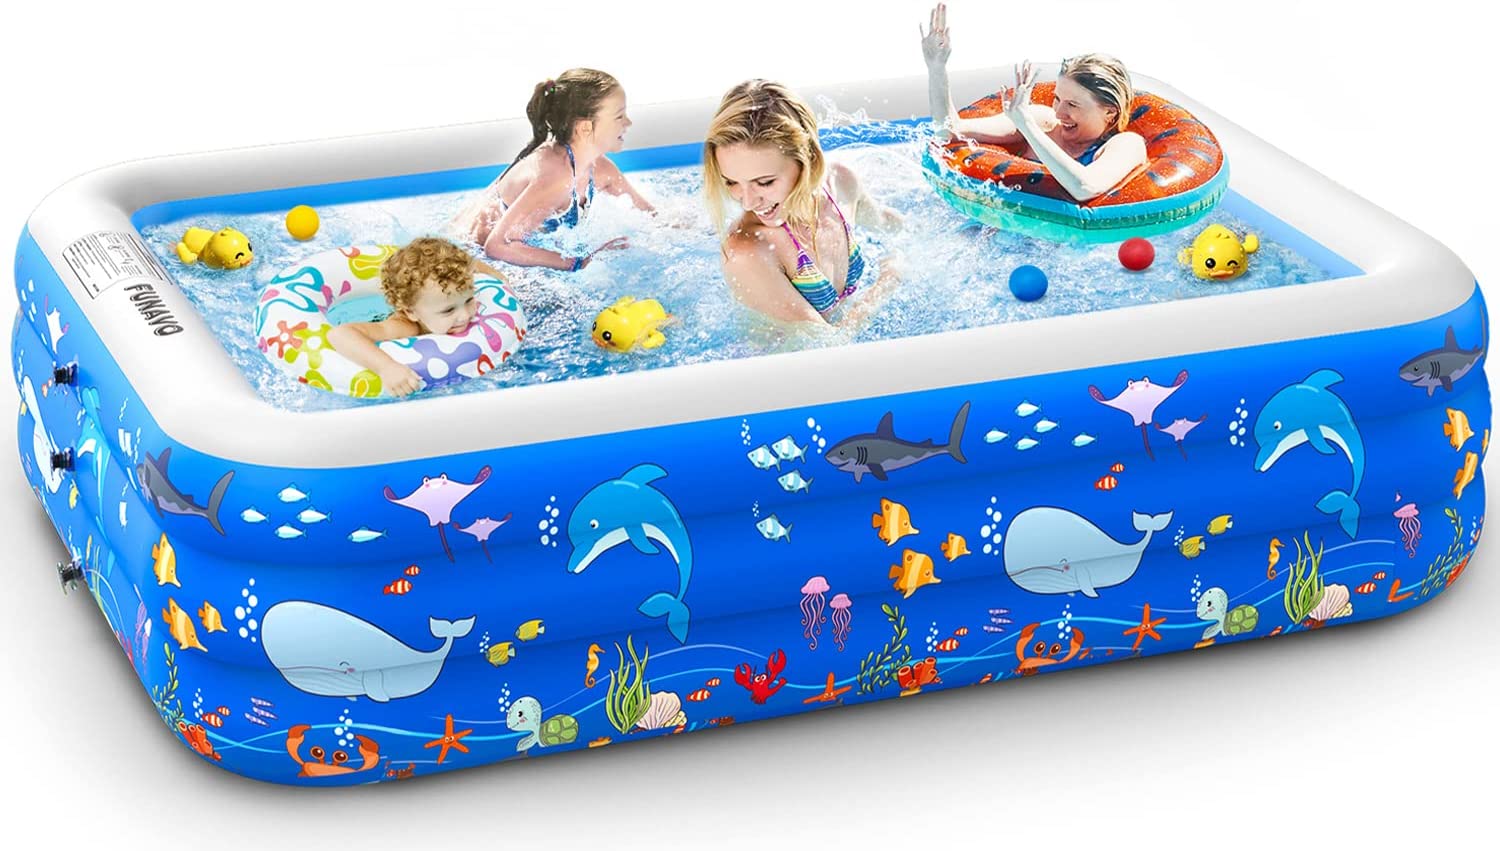 Kiddie inflatable pool, blowup pool